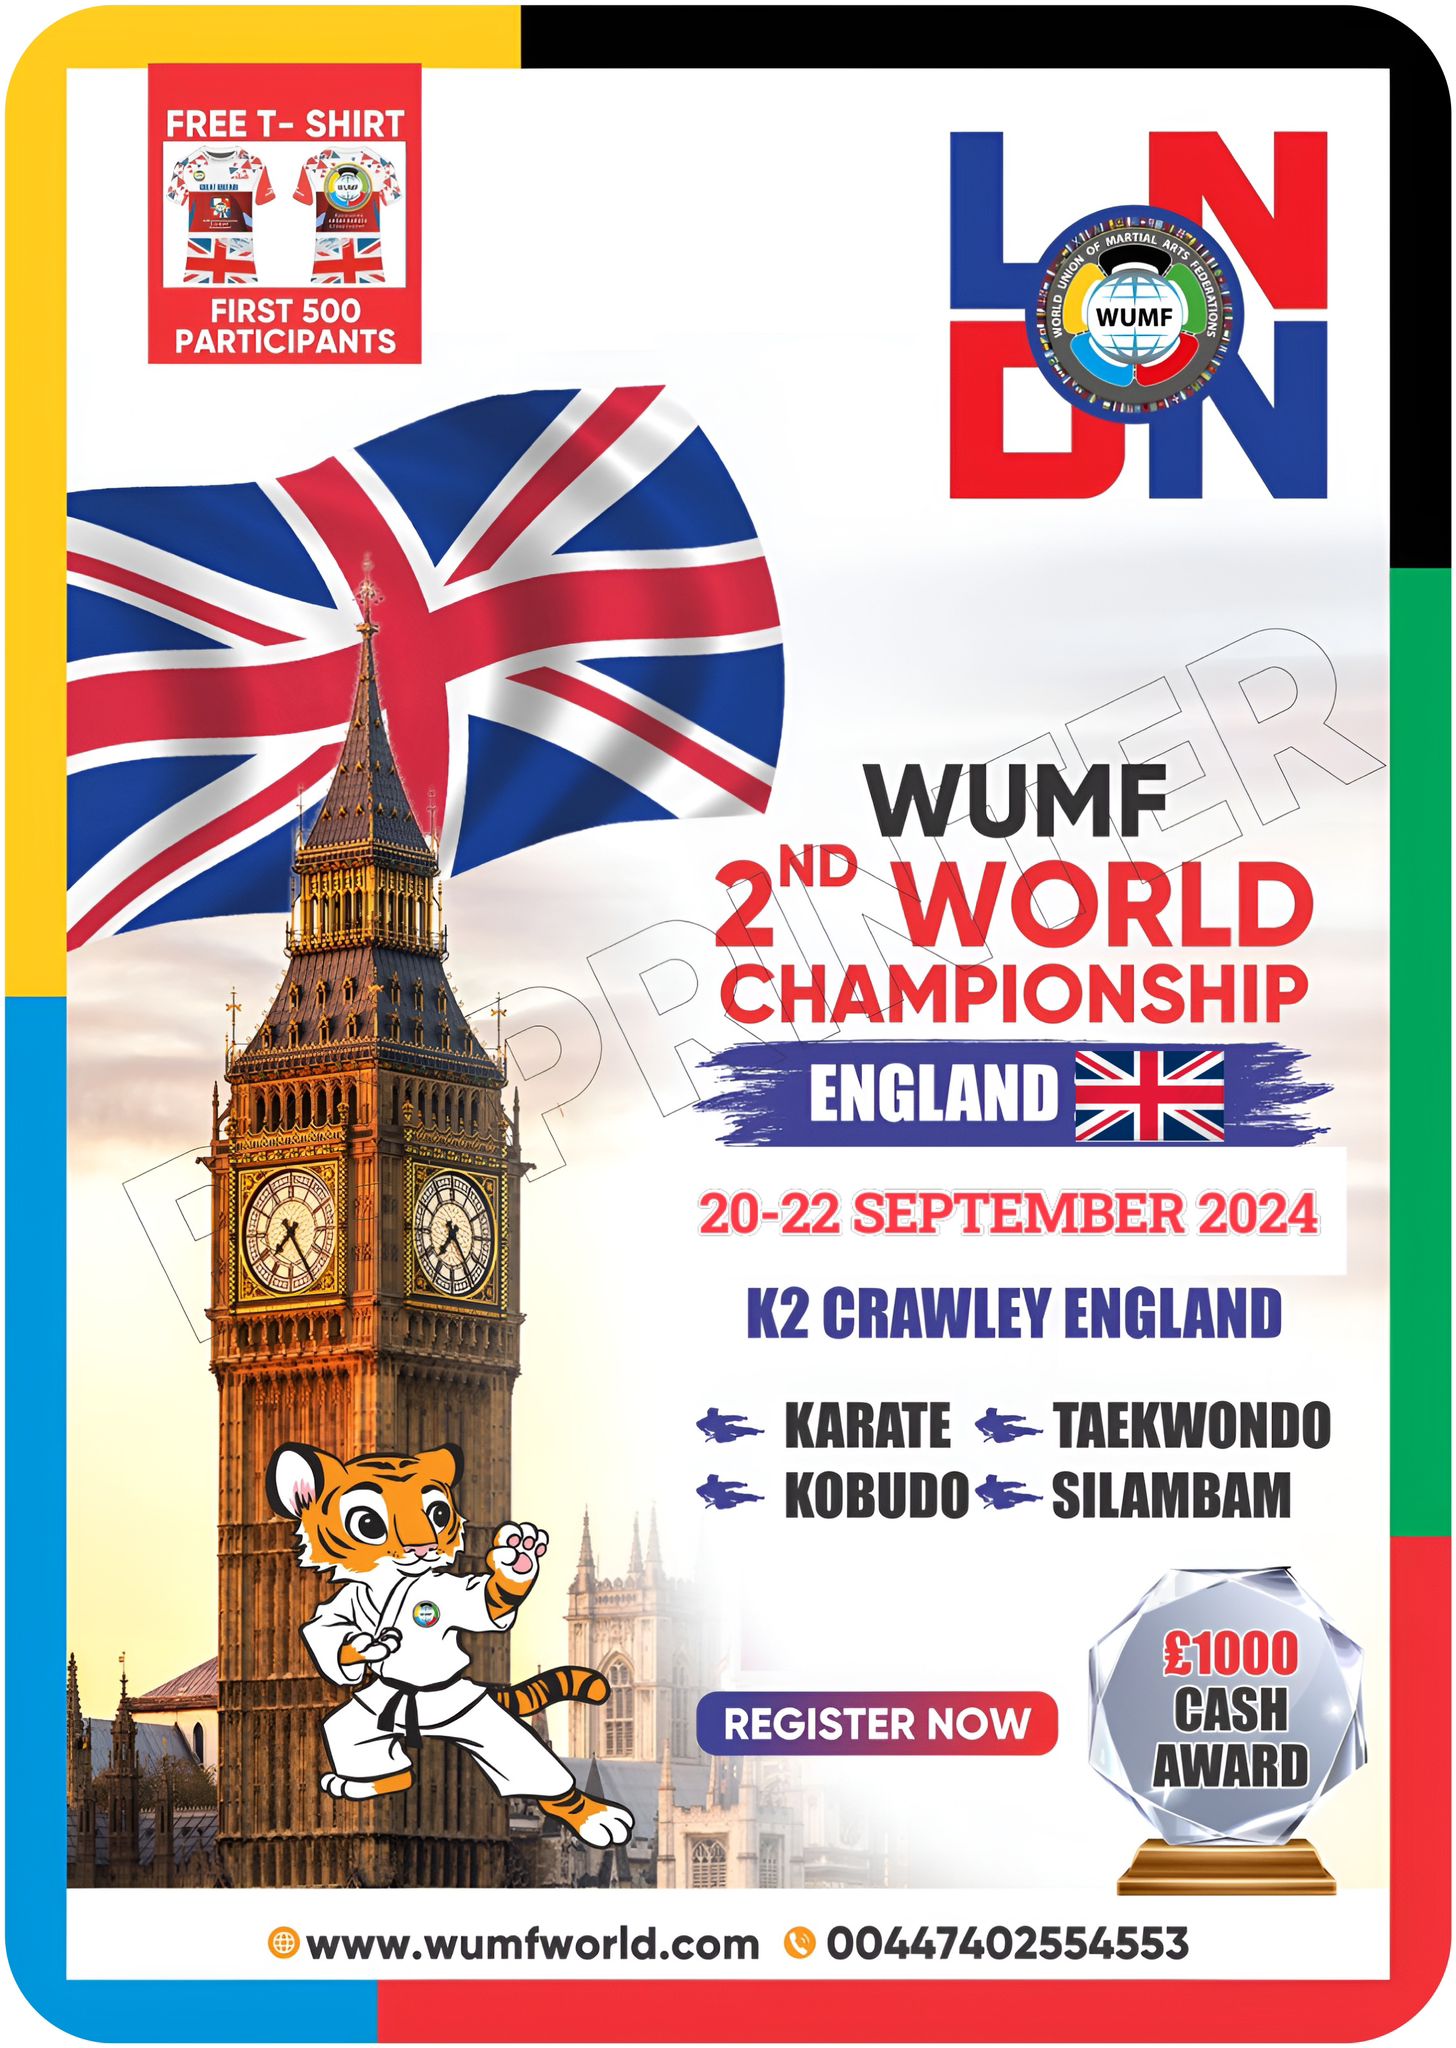 WUMF 2nd World Championship